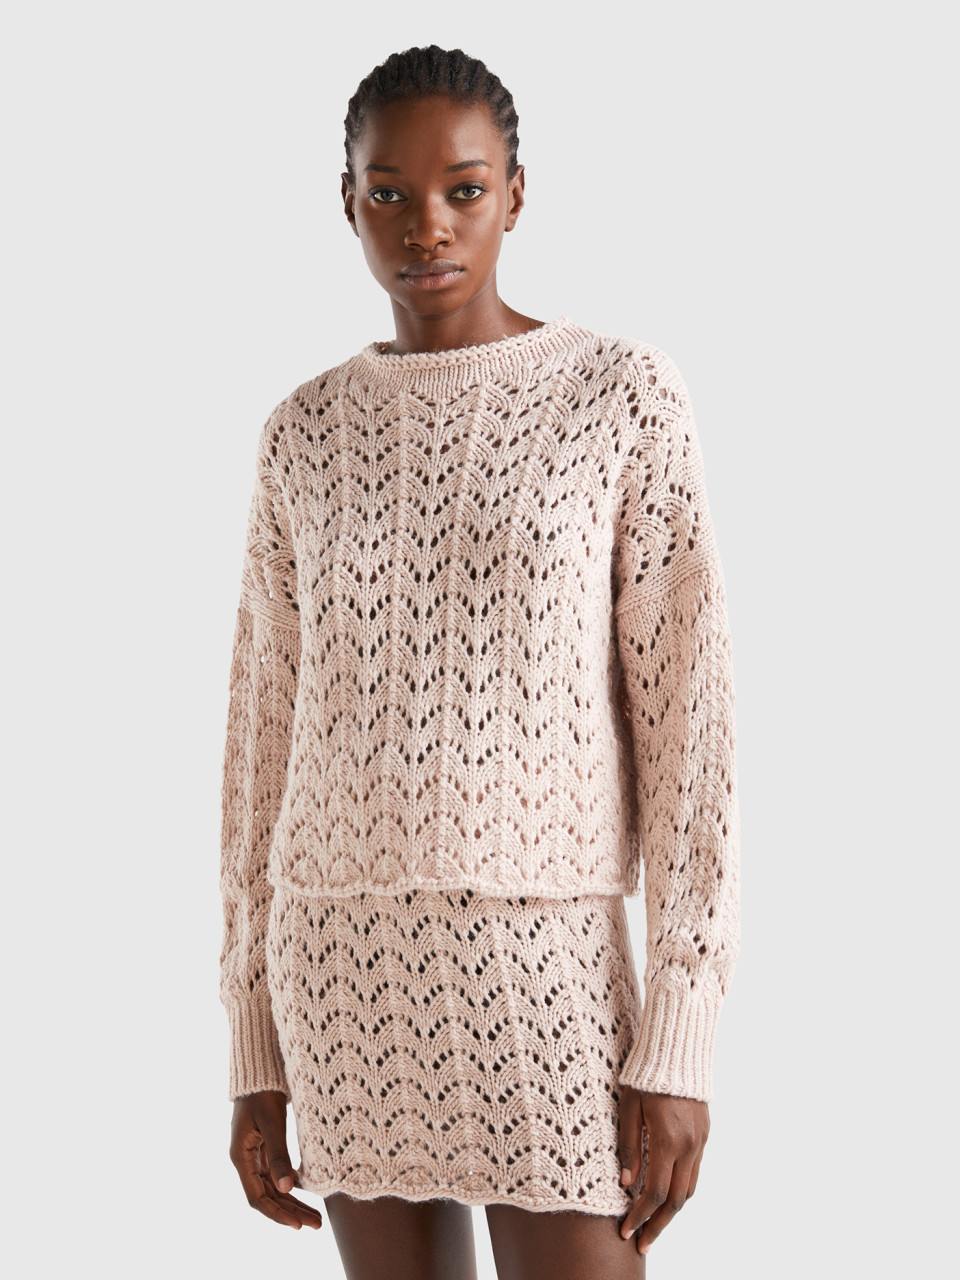 Benetton, Crochet Effect Sweater, Soft Pink, Women